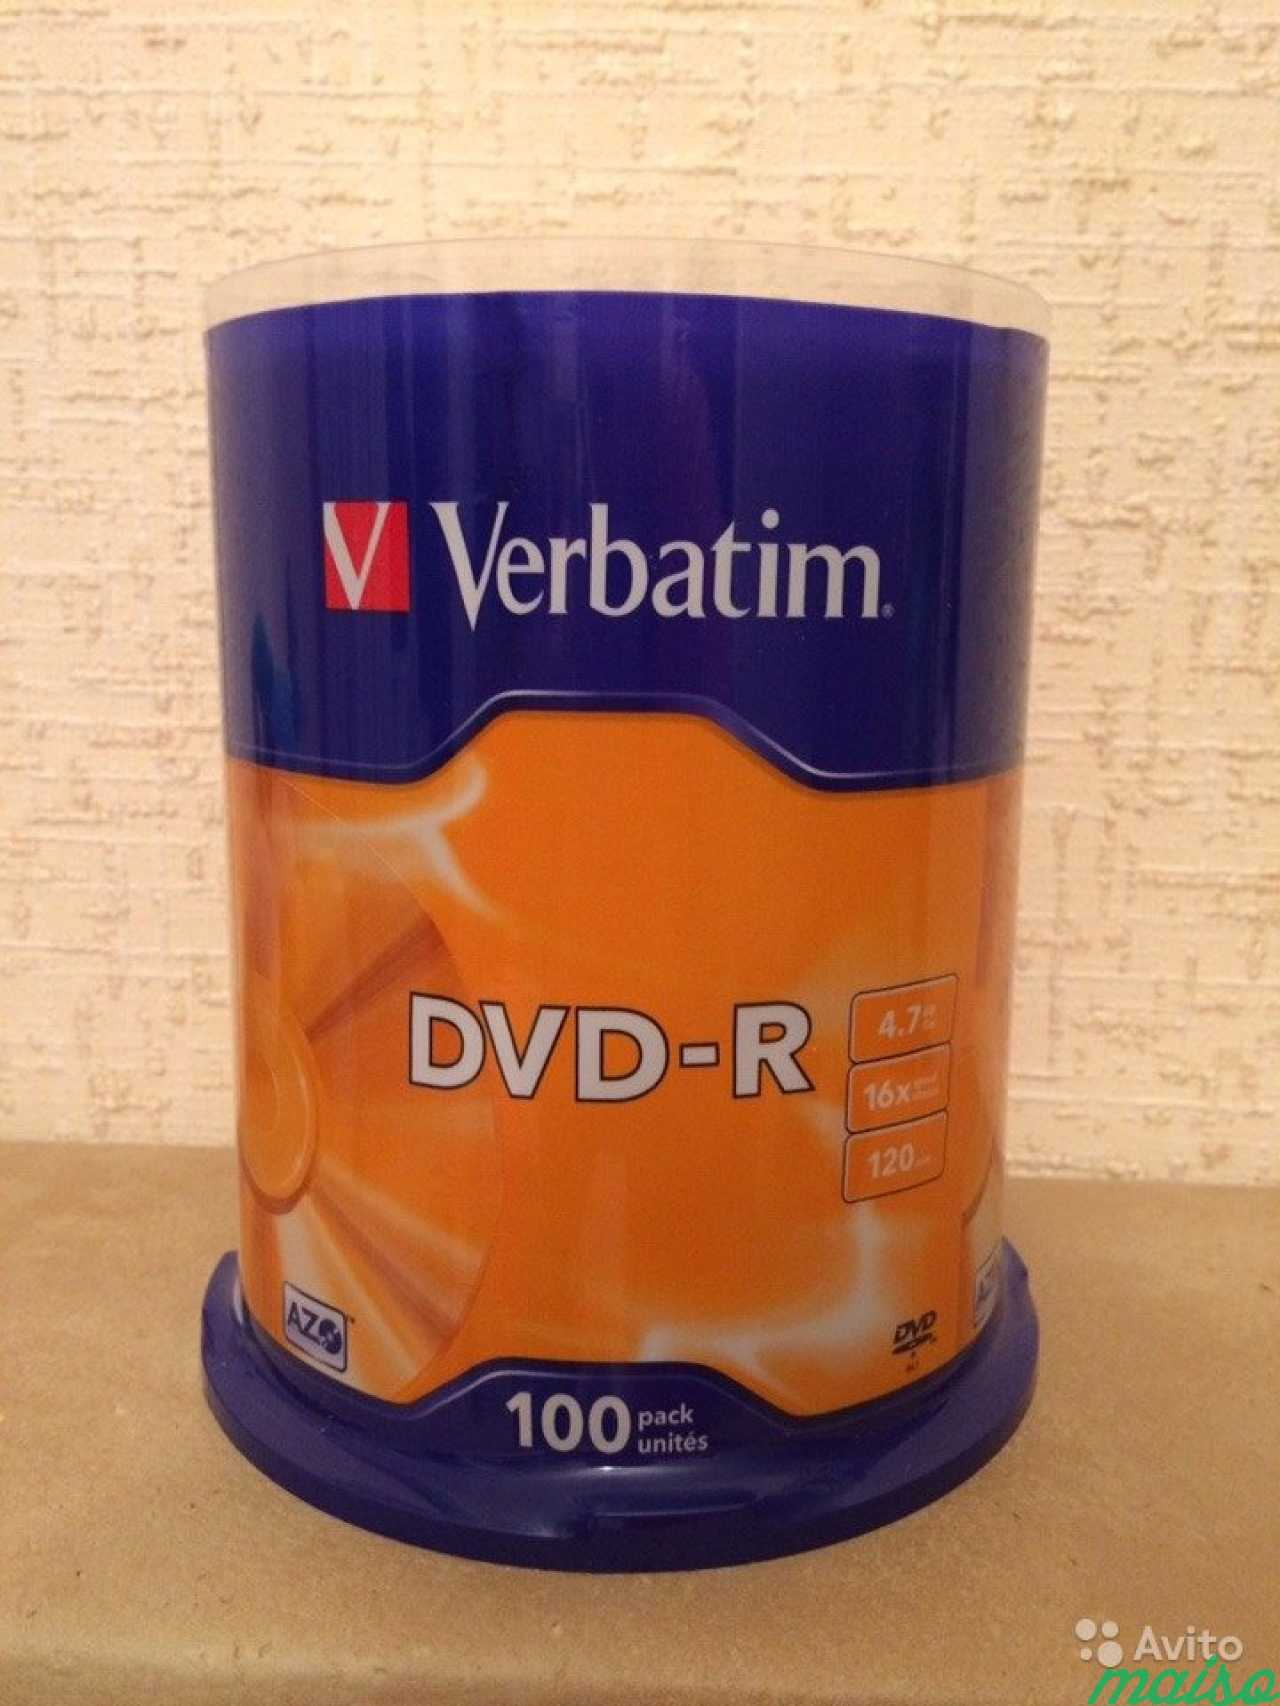 Диски verbatim DVD-R 120 min 4.7Gb 100шт в Санкт-Петербурге. Фото 1